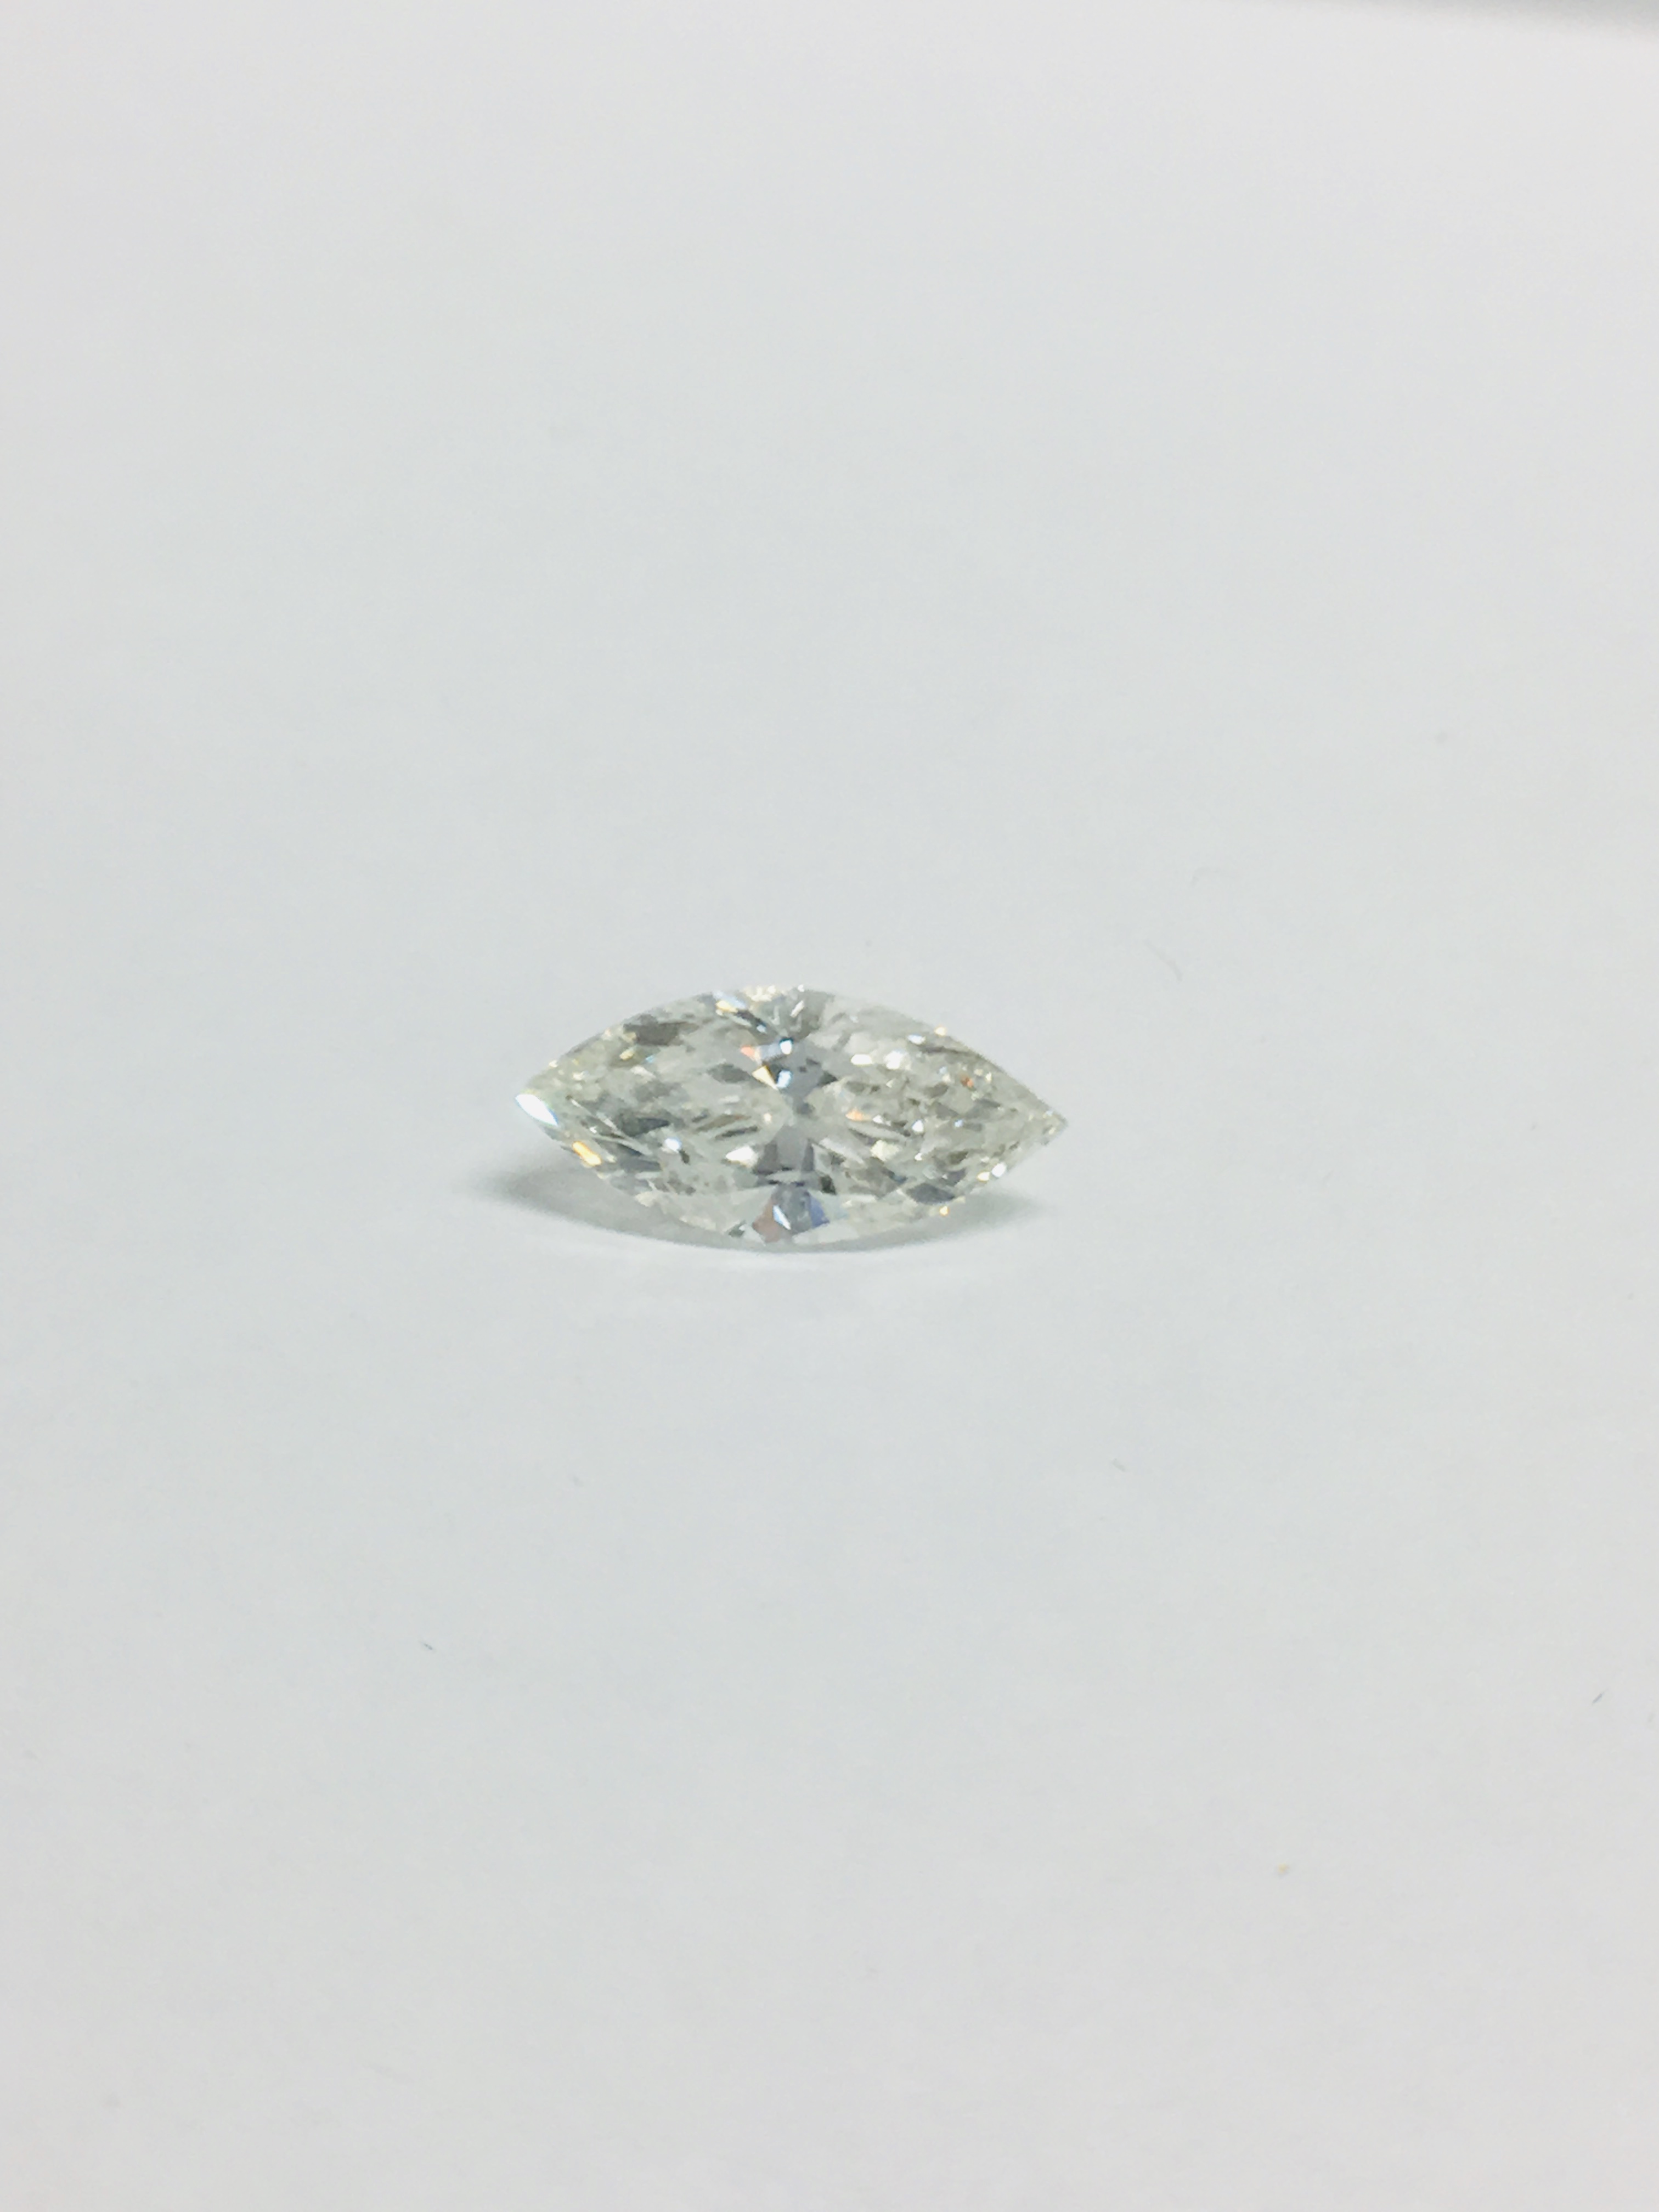 1.23ct Marquis cut Natural Diamond,H colour,si2 clarity